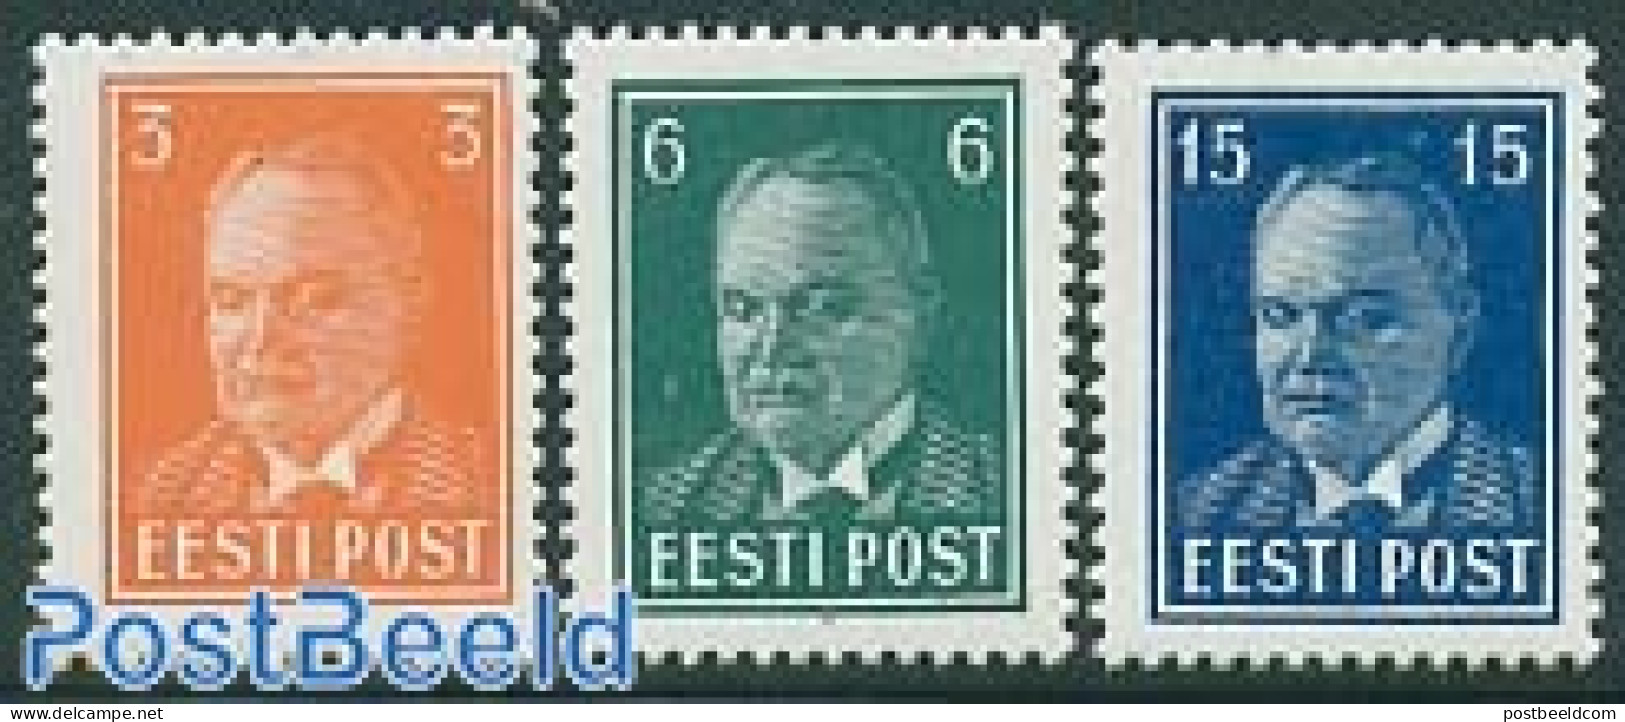 Estonia 1940 Definitives 3v, Mint NH - Estonia